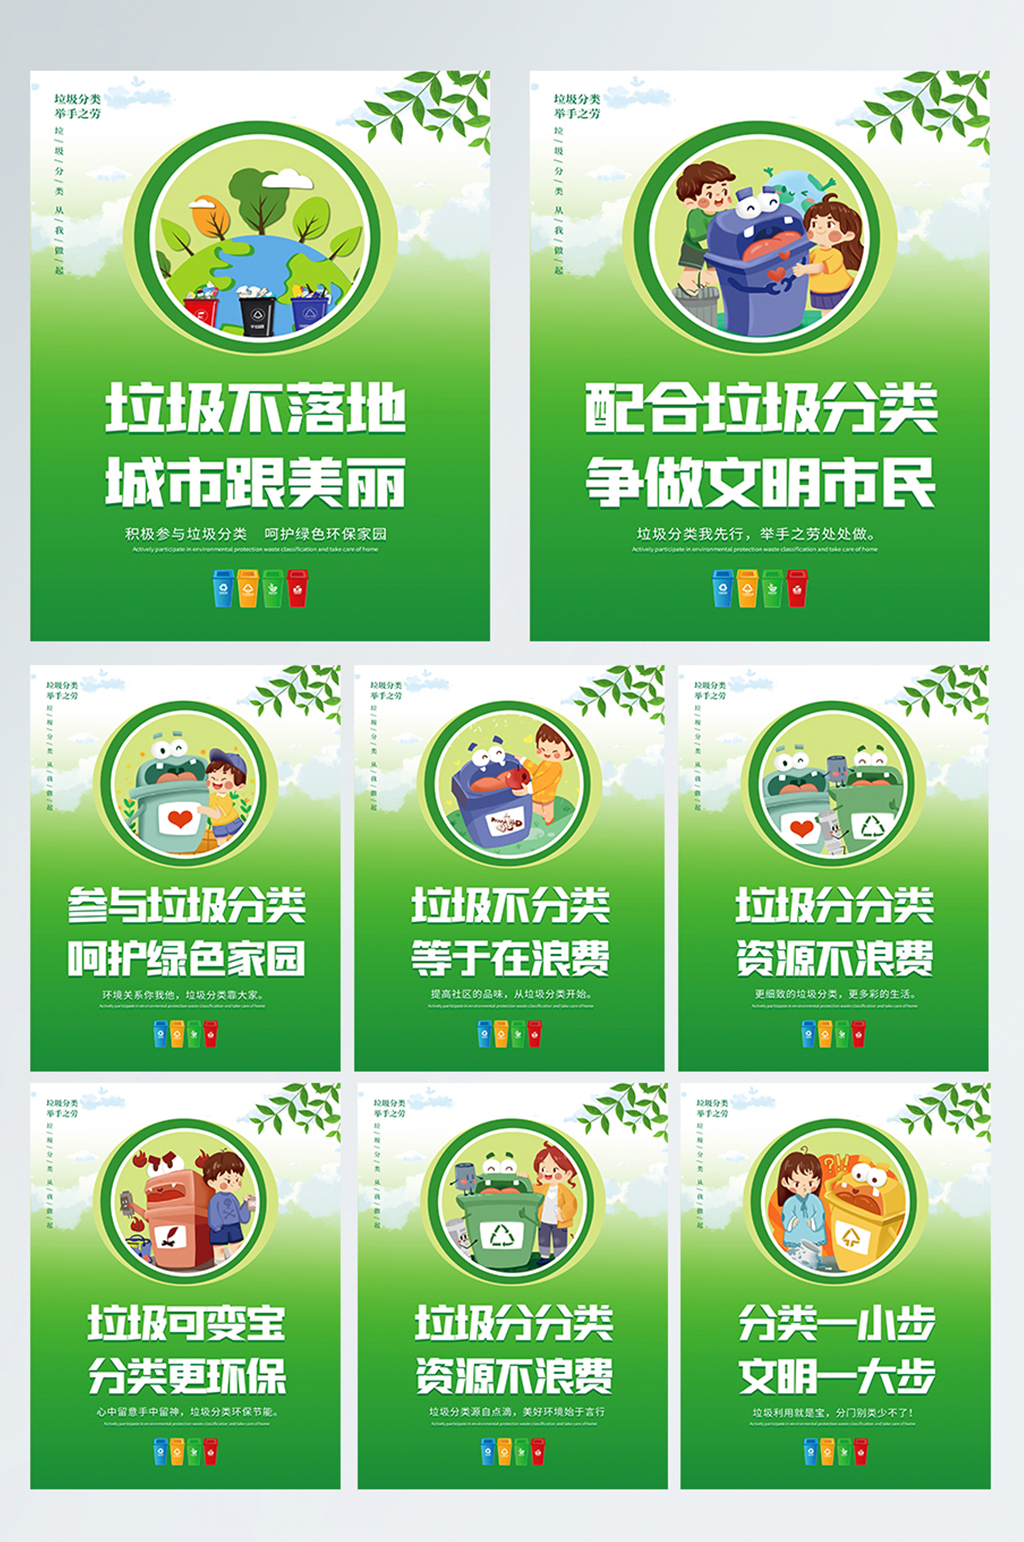 绿色环境保护垃圾分类标语宣传系列海报